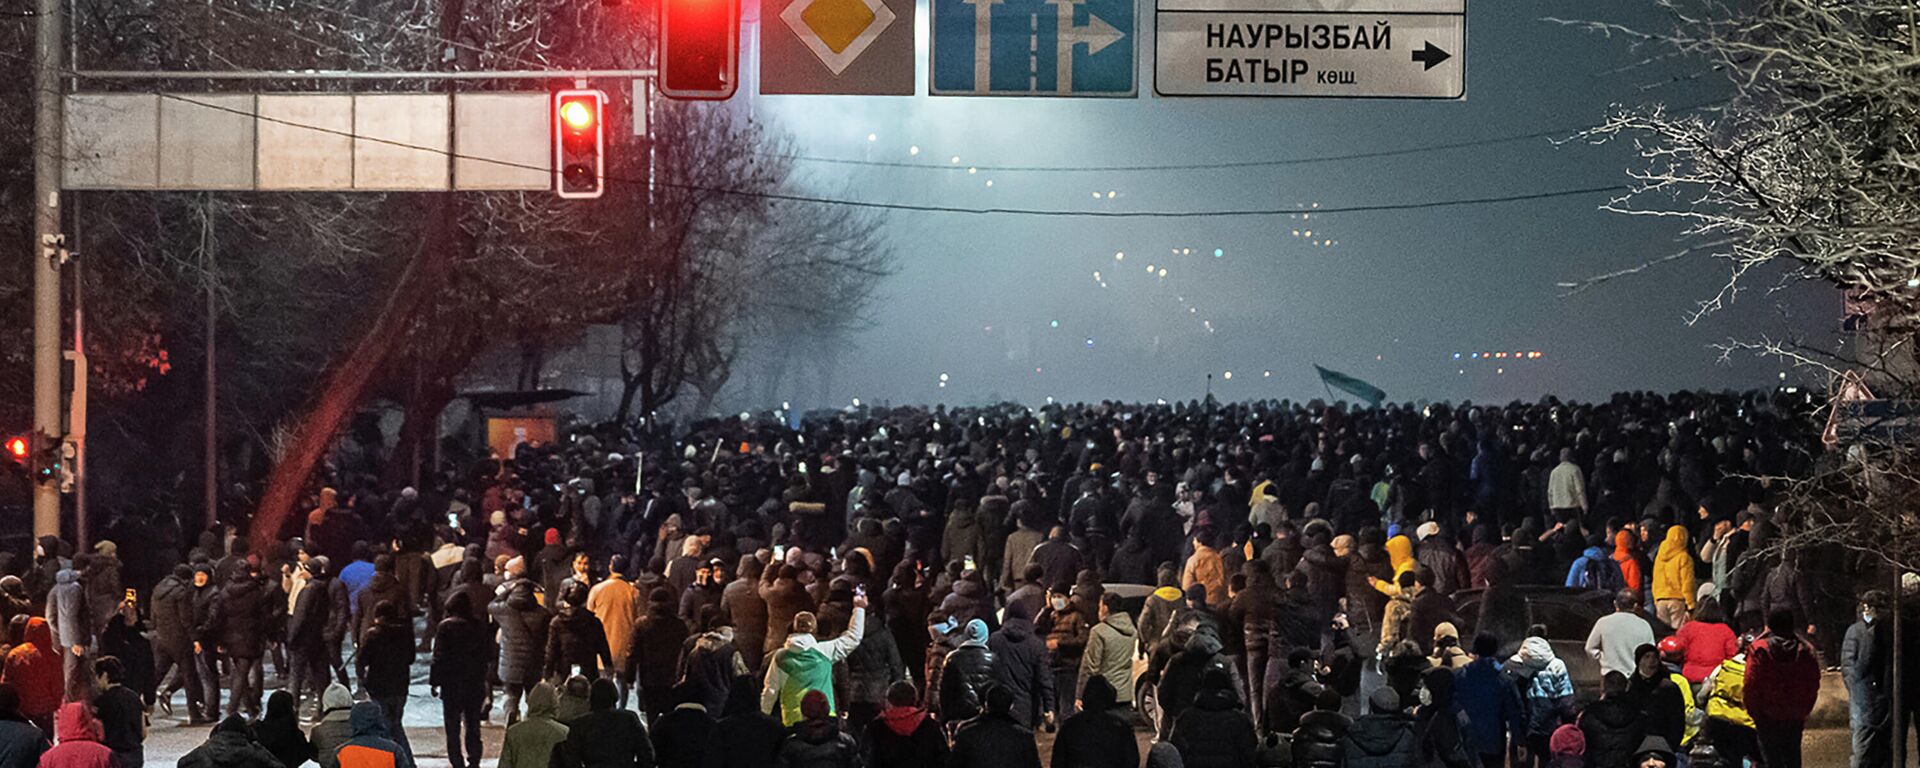 Manifestantes participam de uma manifestação em Almaty, em 4 de janeiro de 2022, após o aumento do preço dos combustíveis - Sputnik Brasil, 1920, 04.01.2022